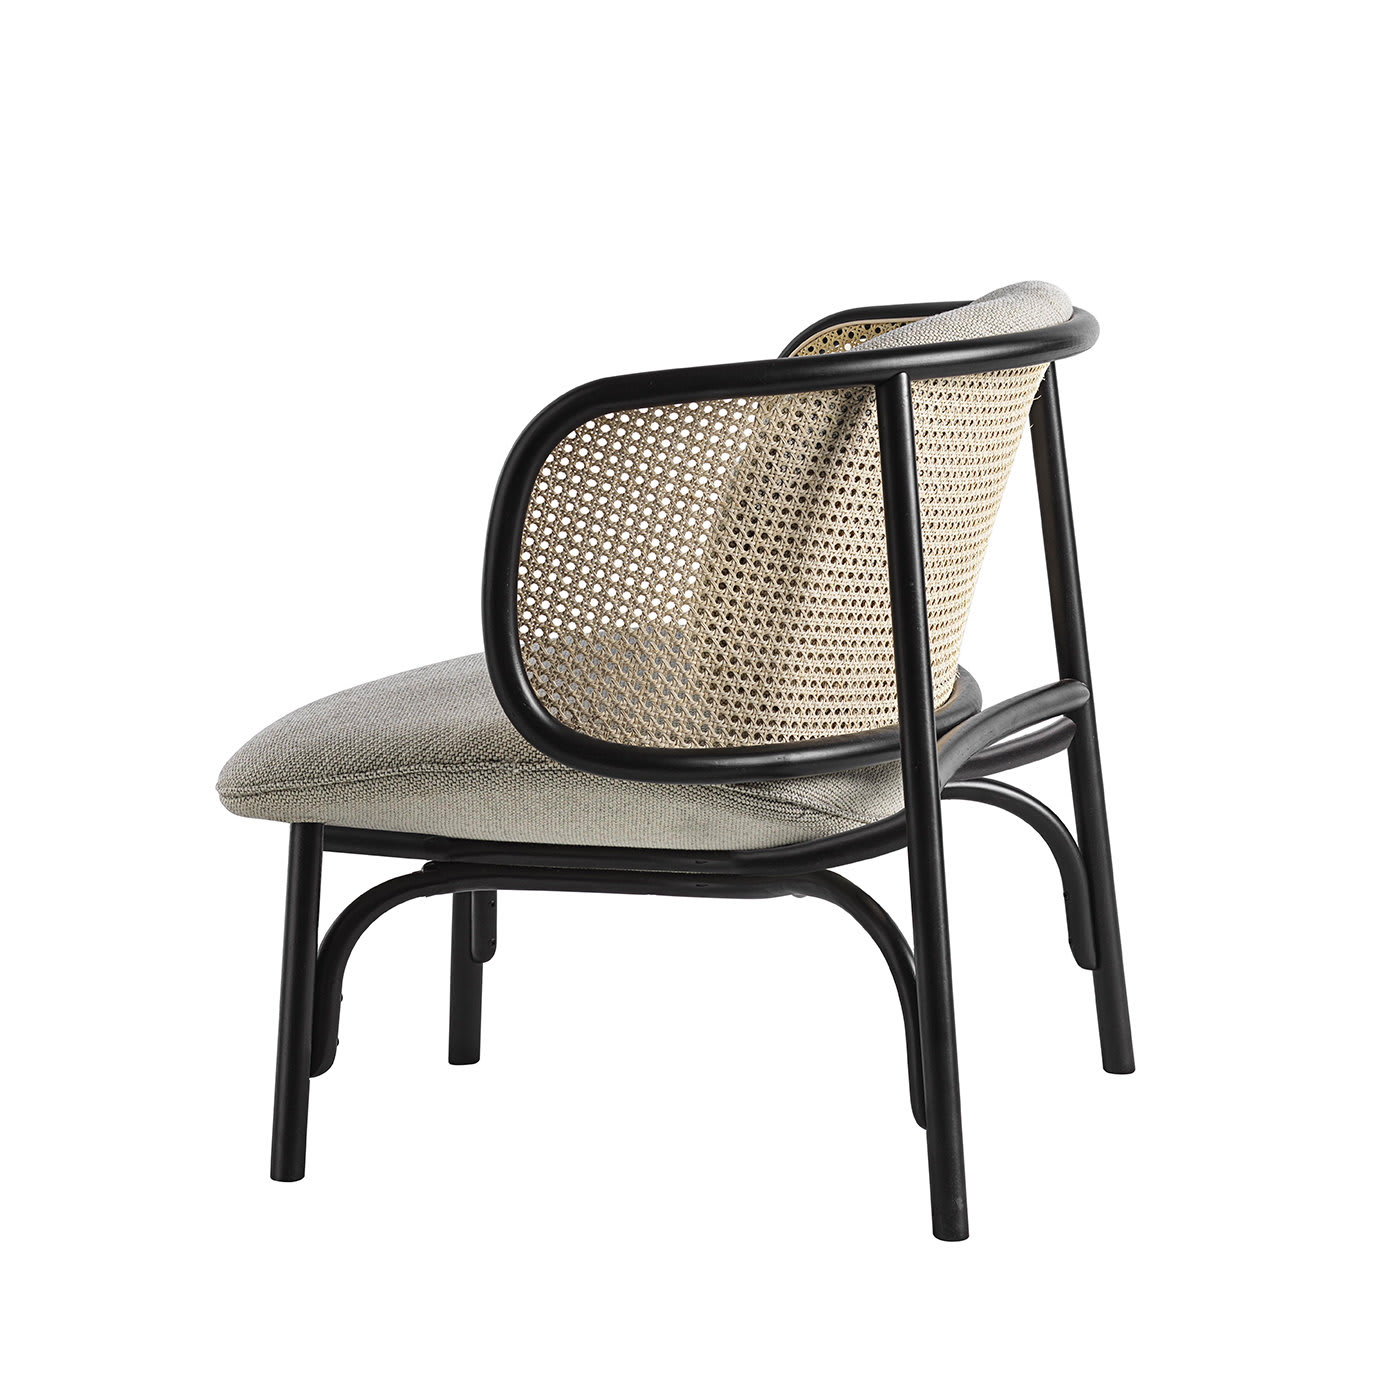 Suzenne Lounge Chair by Chiara Andreatti - Gebrüder Thonet Vienna GmbH (GTV) – Wiener GTV Design